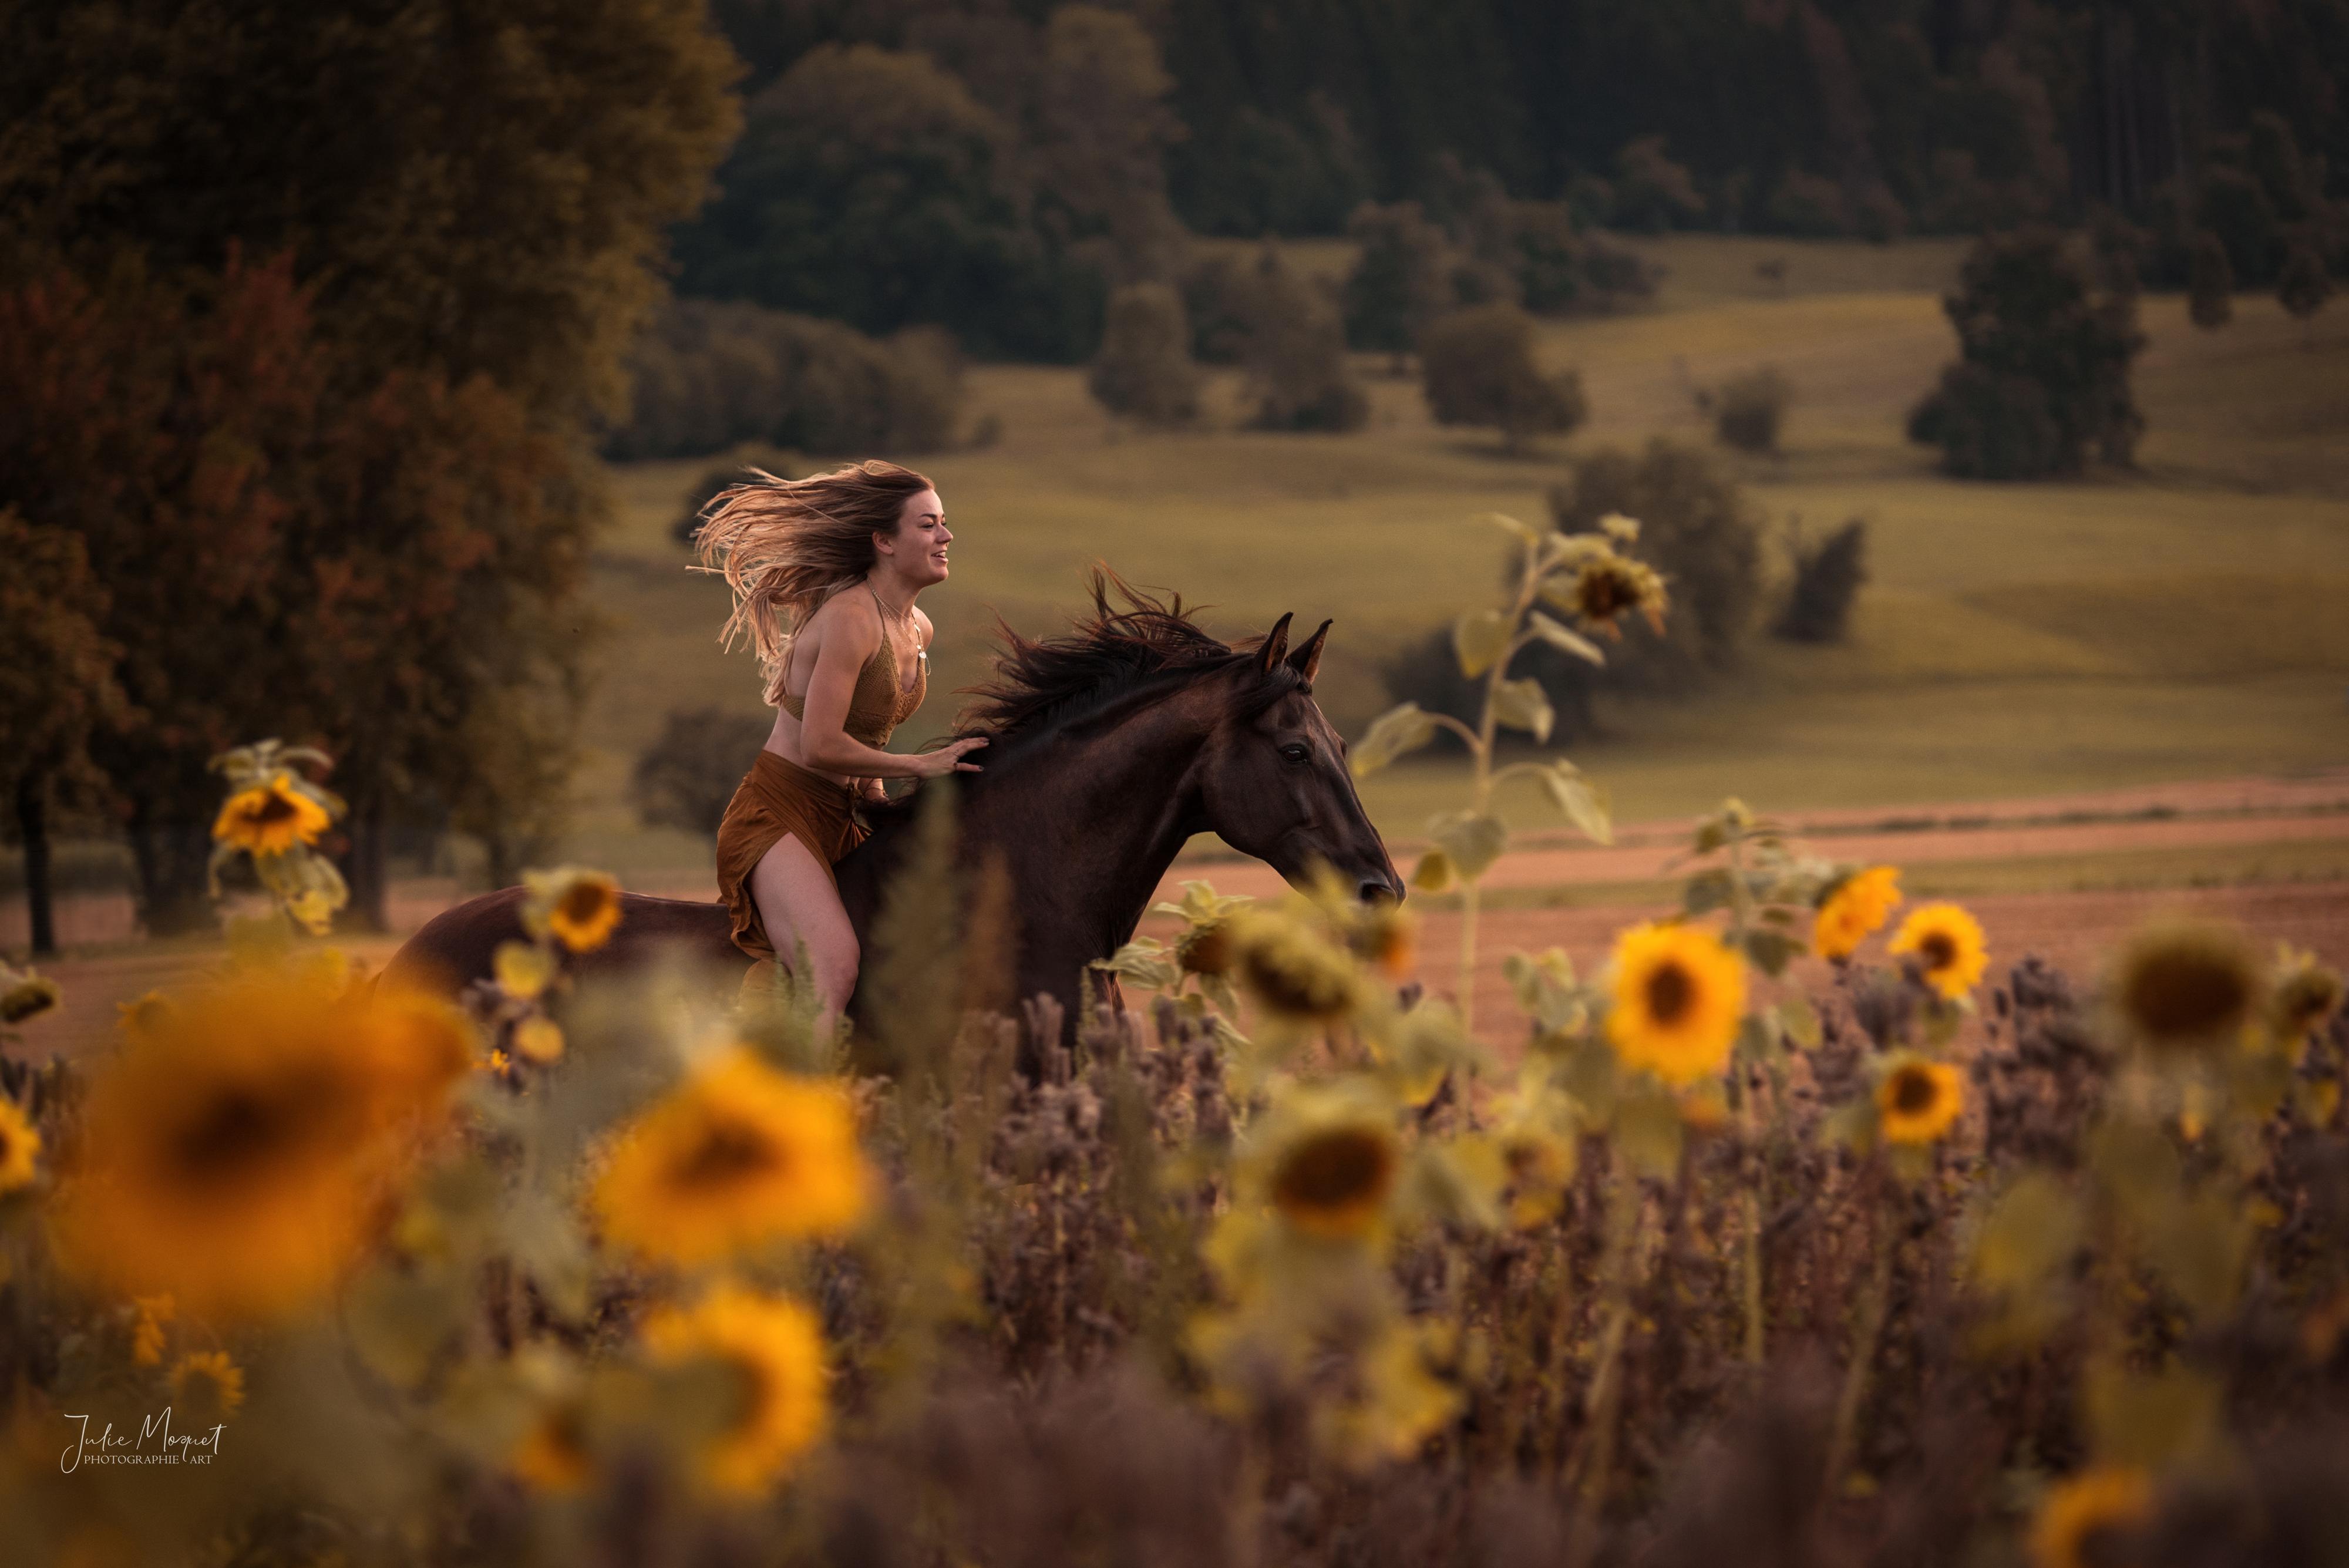 Eine junge Frau galoppiert mit ausgebreiteten Armen auf einem schwarzen Pferd. Im Vordergrund ist ein Sonnenblumenfeld.